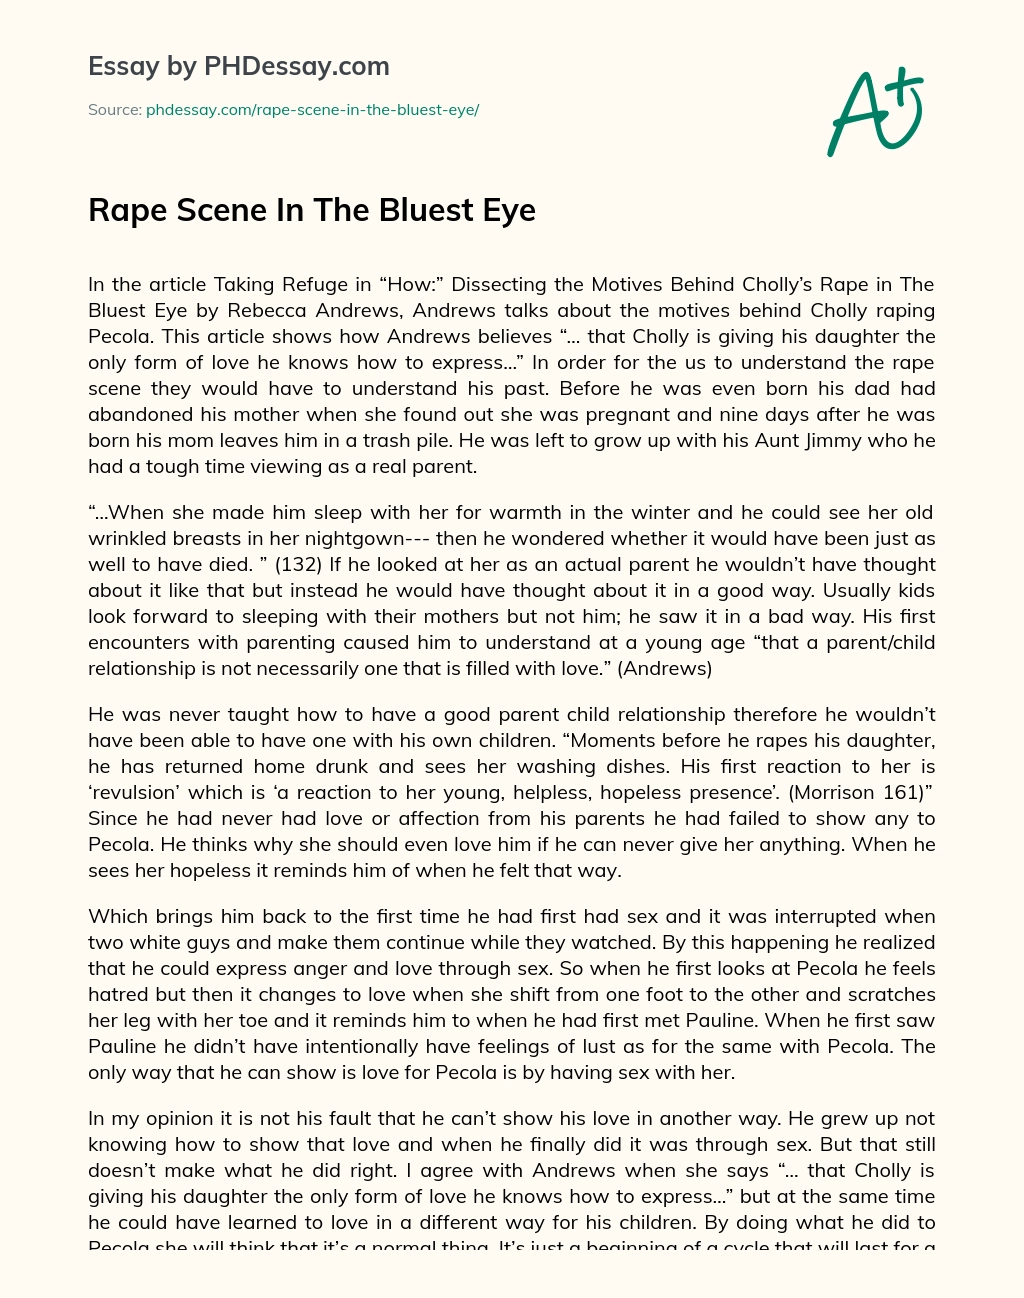 Rape Scene In The Bluest Eye essay